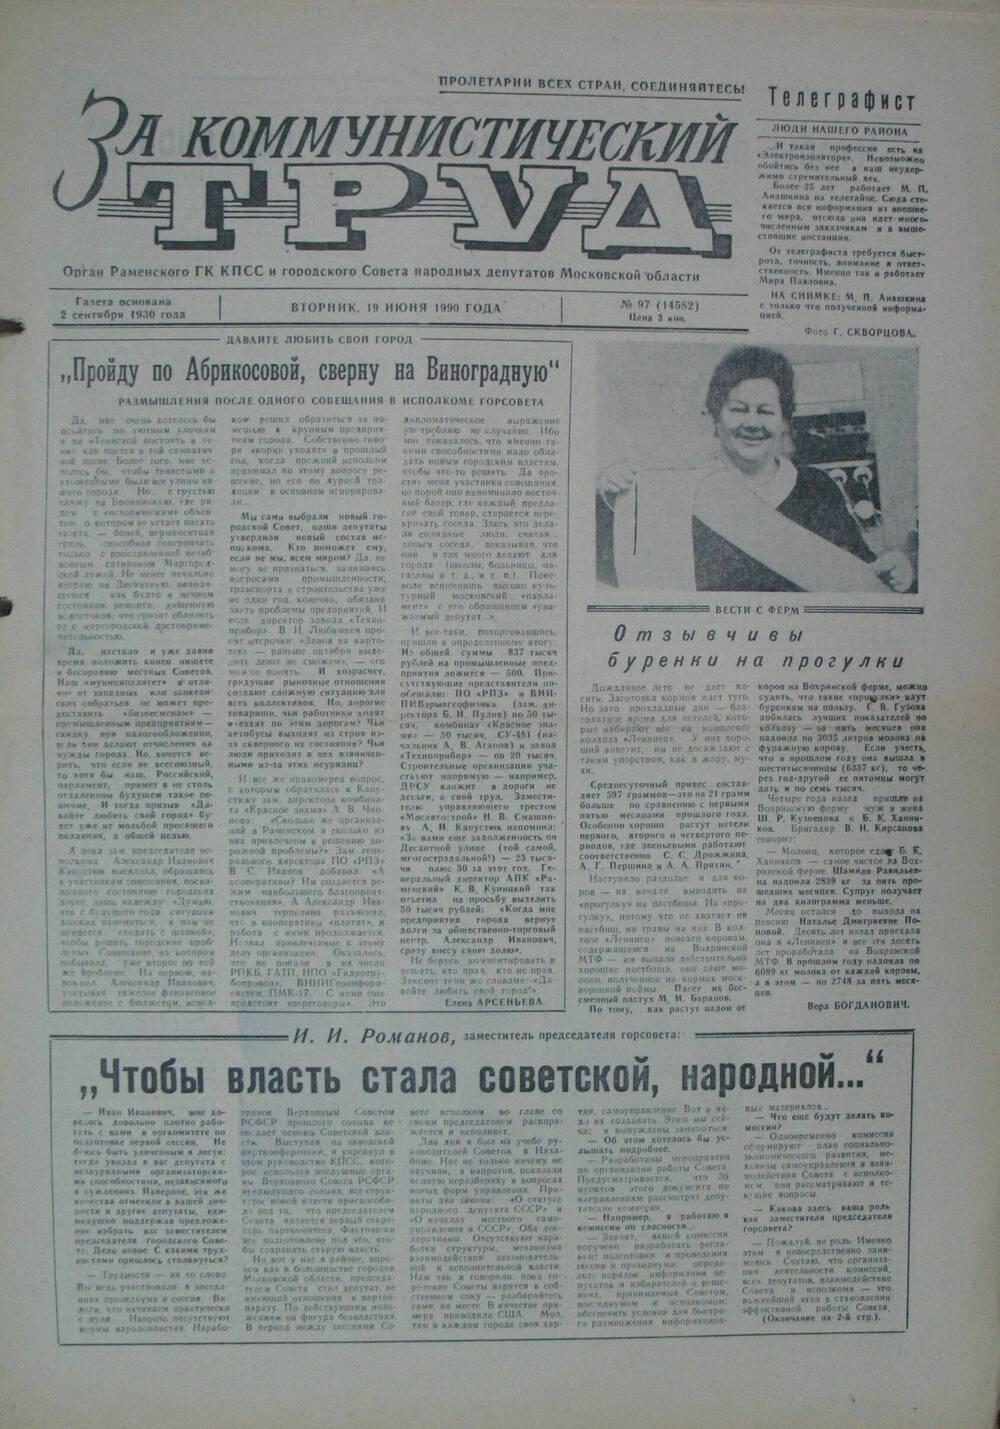 За коммунистический труд, газета № 97 от 19 июня 1990г